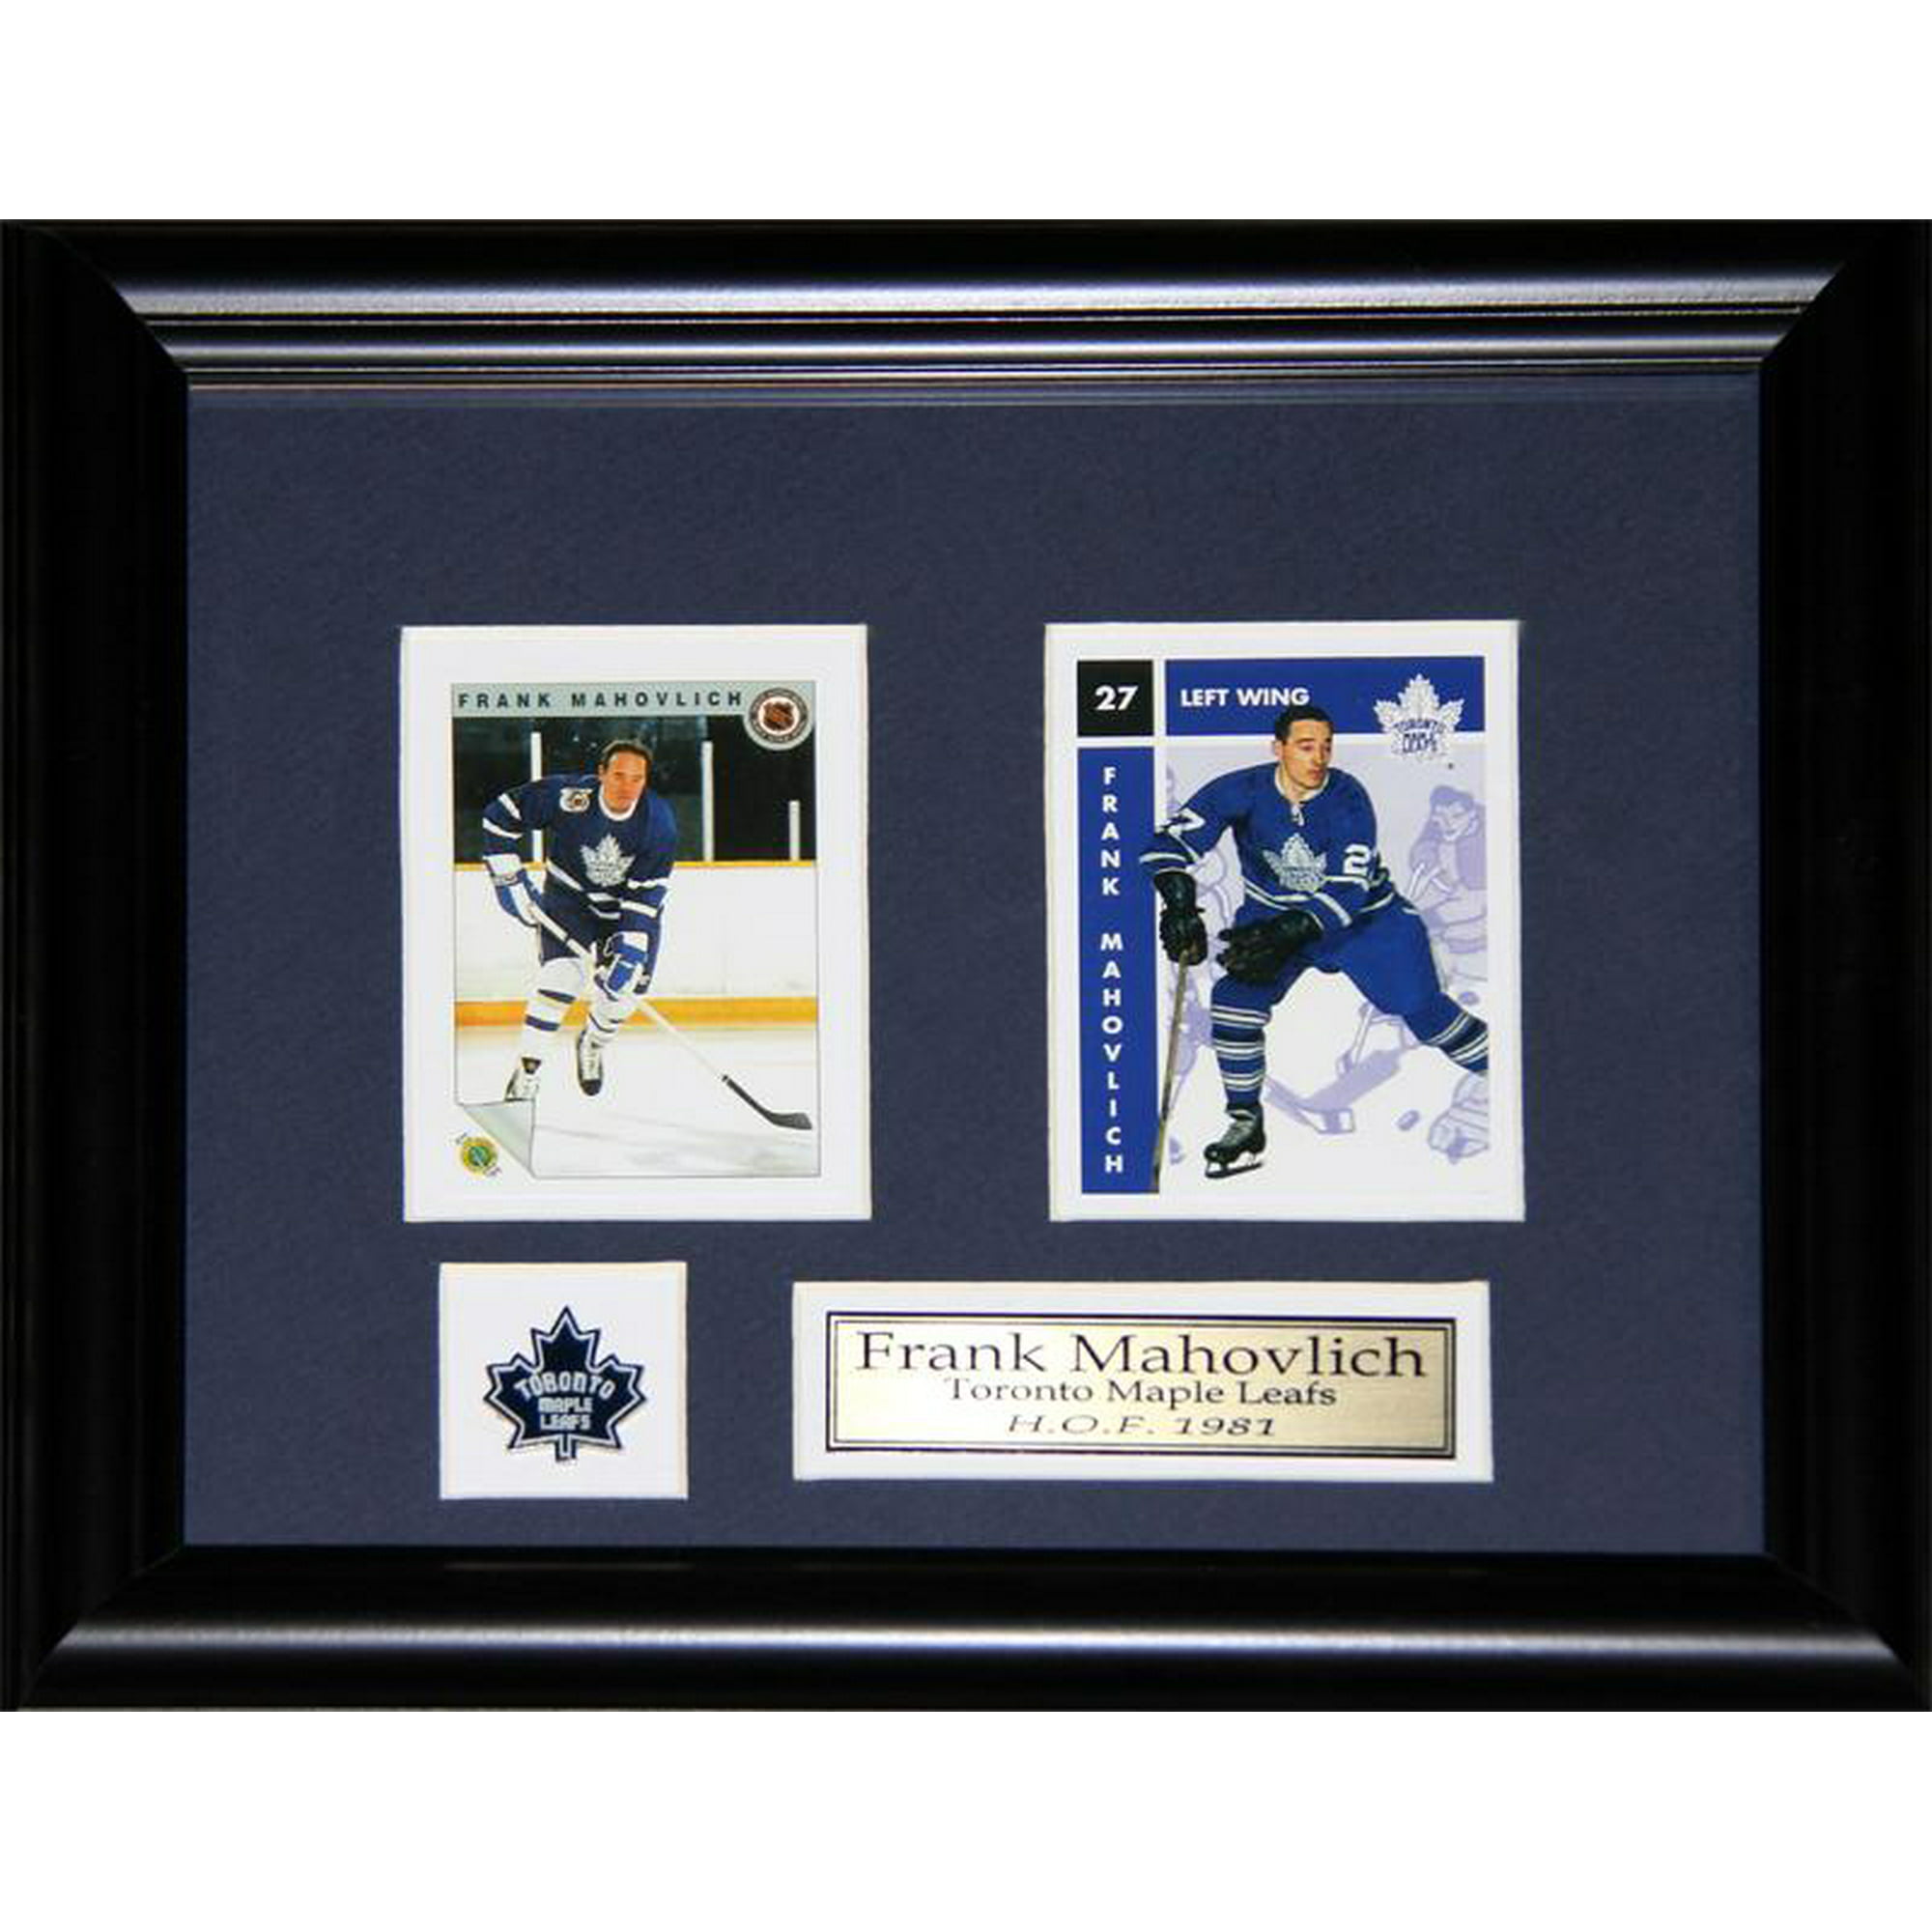 Frank Mahovlich Maple Leafs Hockey Card